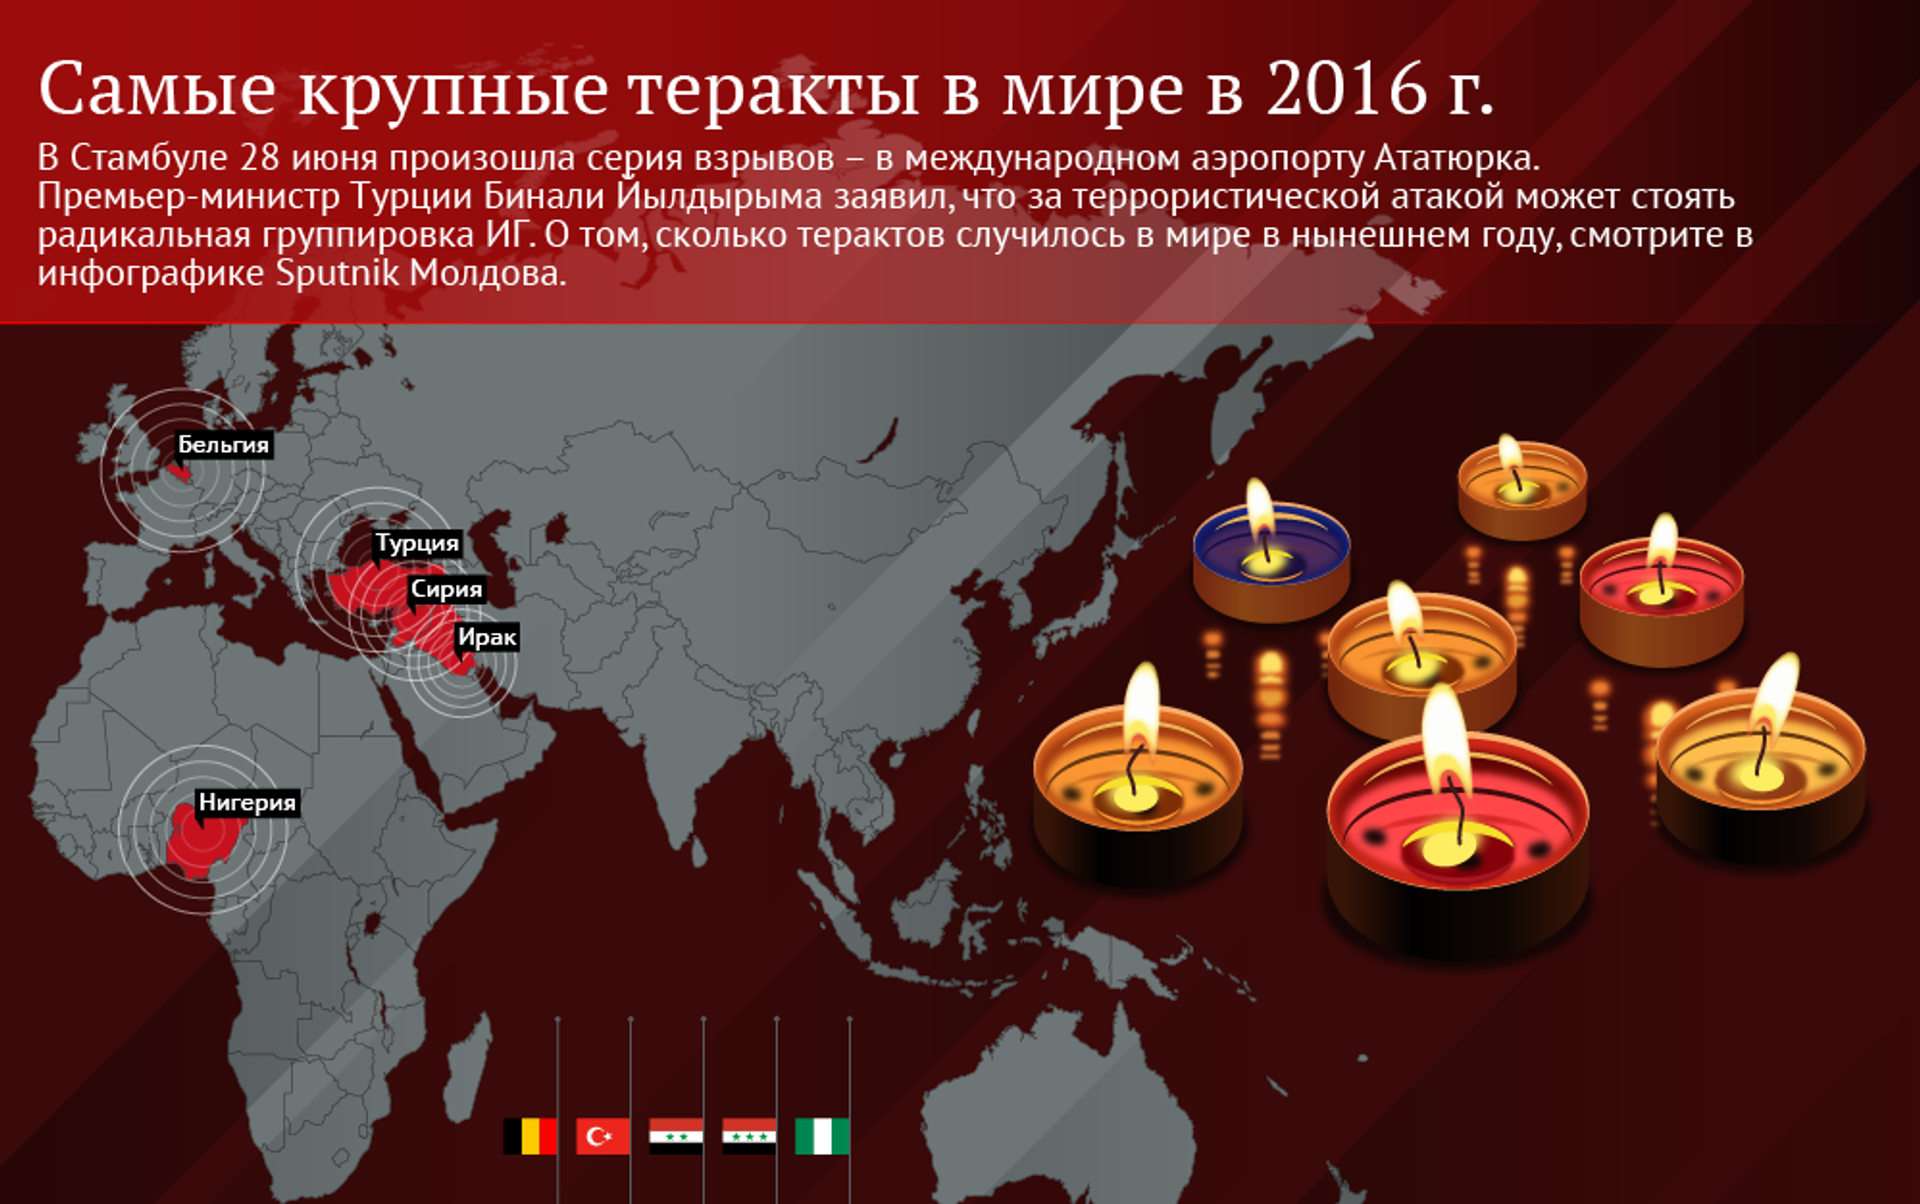 Даты терактов в мире. Самые крупные теракты в мире. Топ 5 терактов в мире. Крупнейших террористических актах в России и за рубежом.